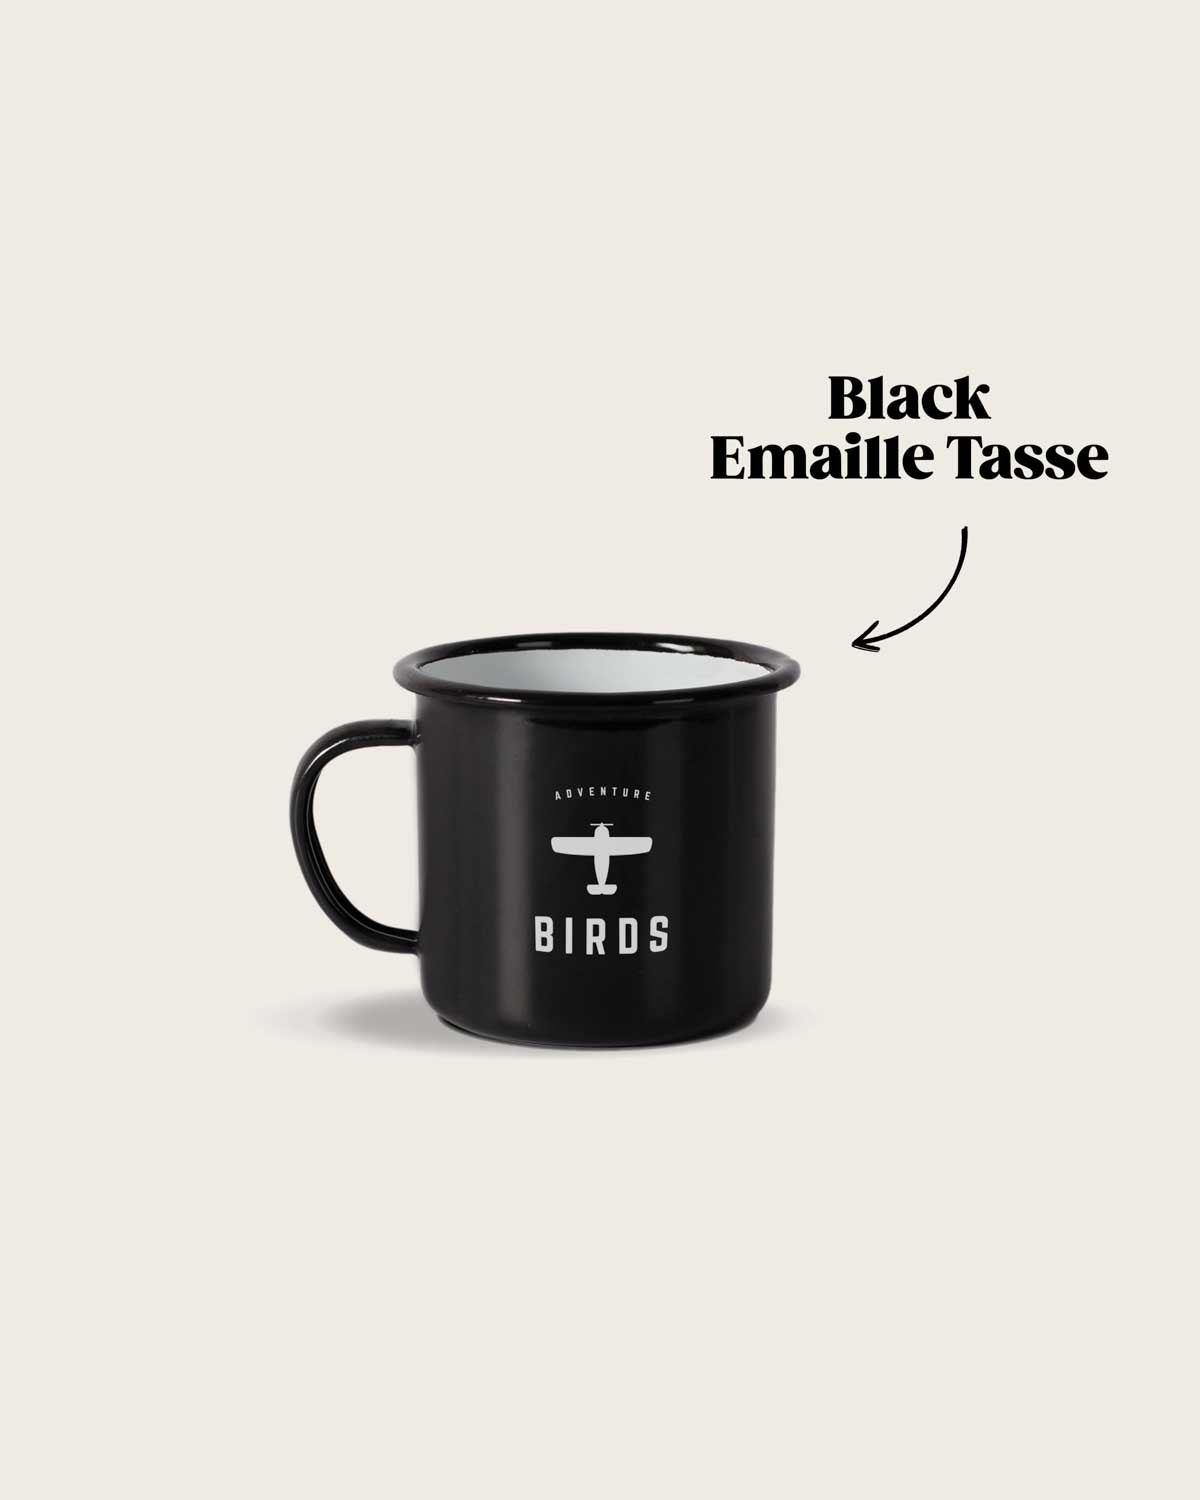 Die hochwertige Black Camping Tasse von BIRDS. Die Tasse hat ein schlichtes, stilvolles Design. In weißer Farbe ist das minimalistische BIRDS Logo zu sehen. 